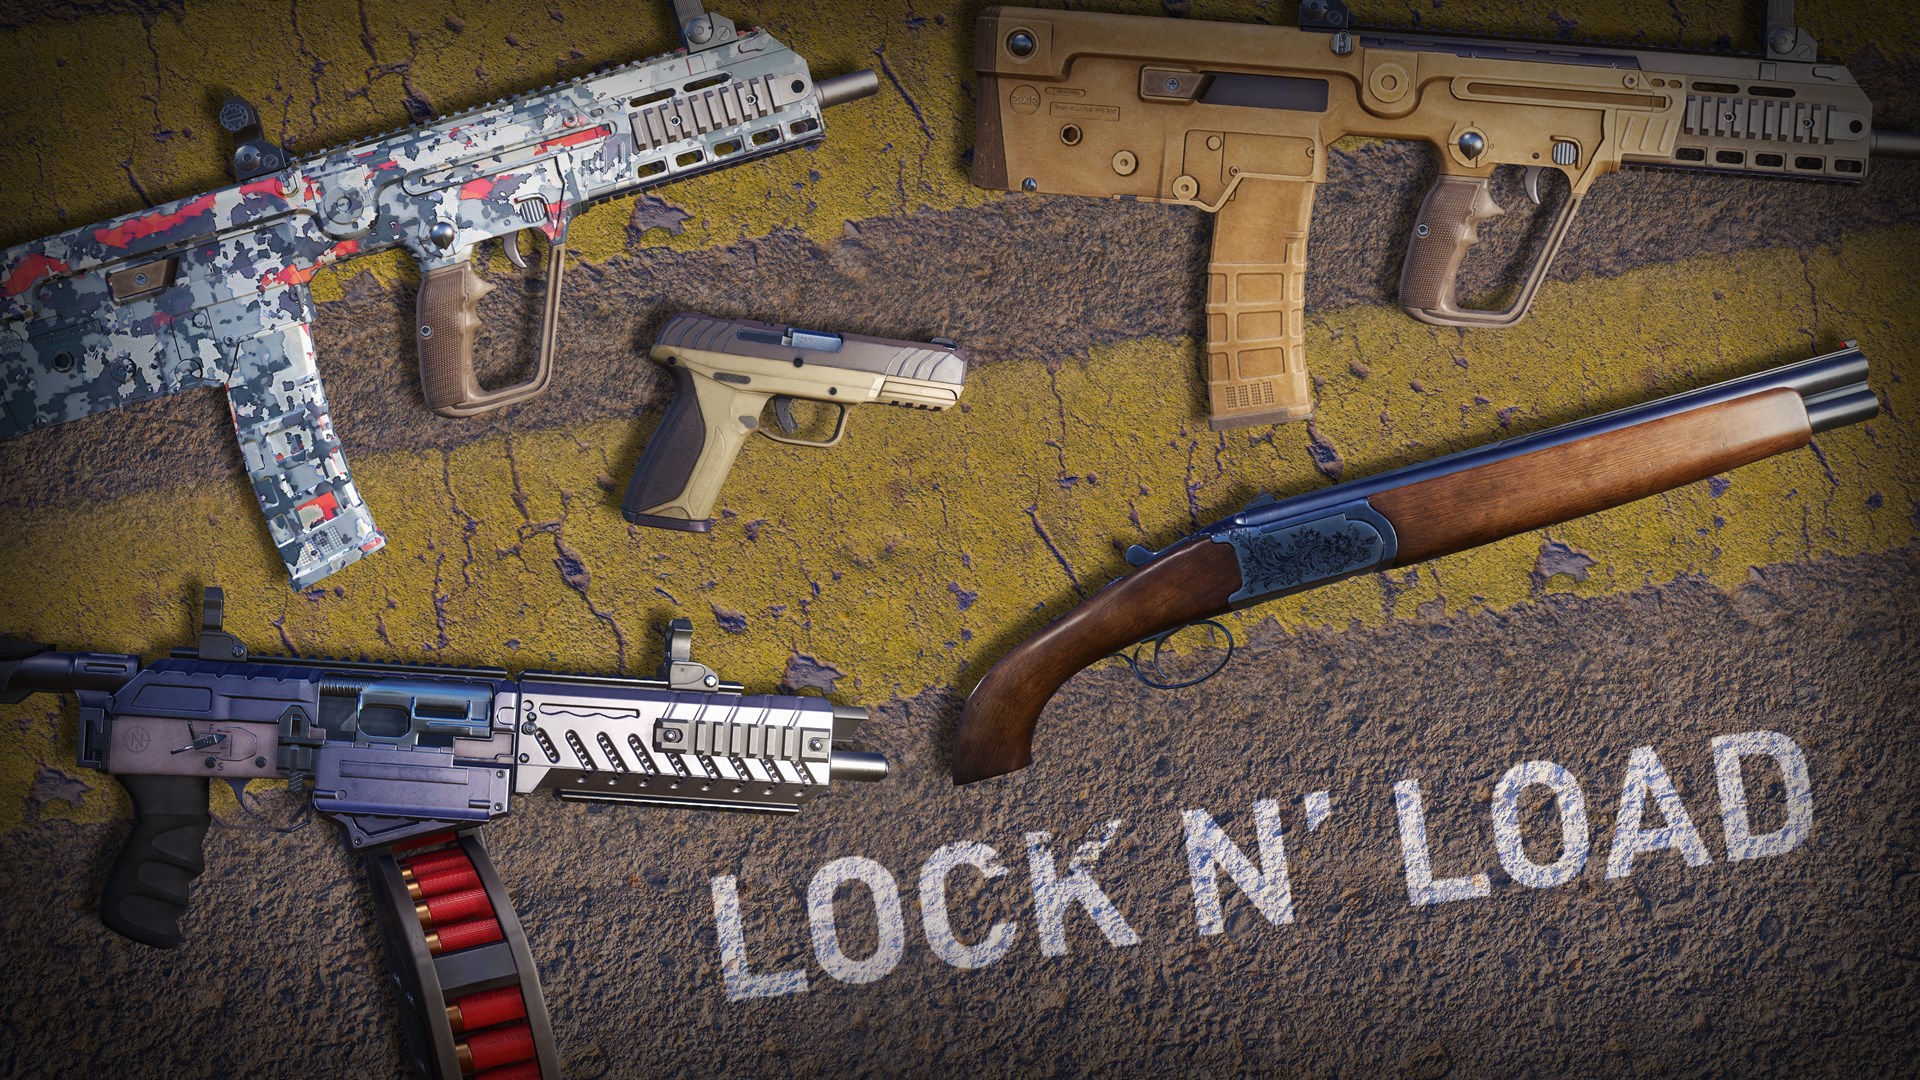 Lock n' Load Weapons Pack